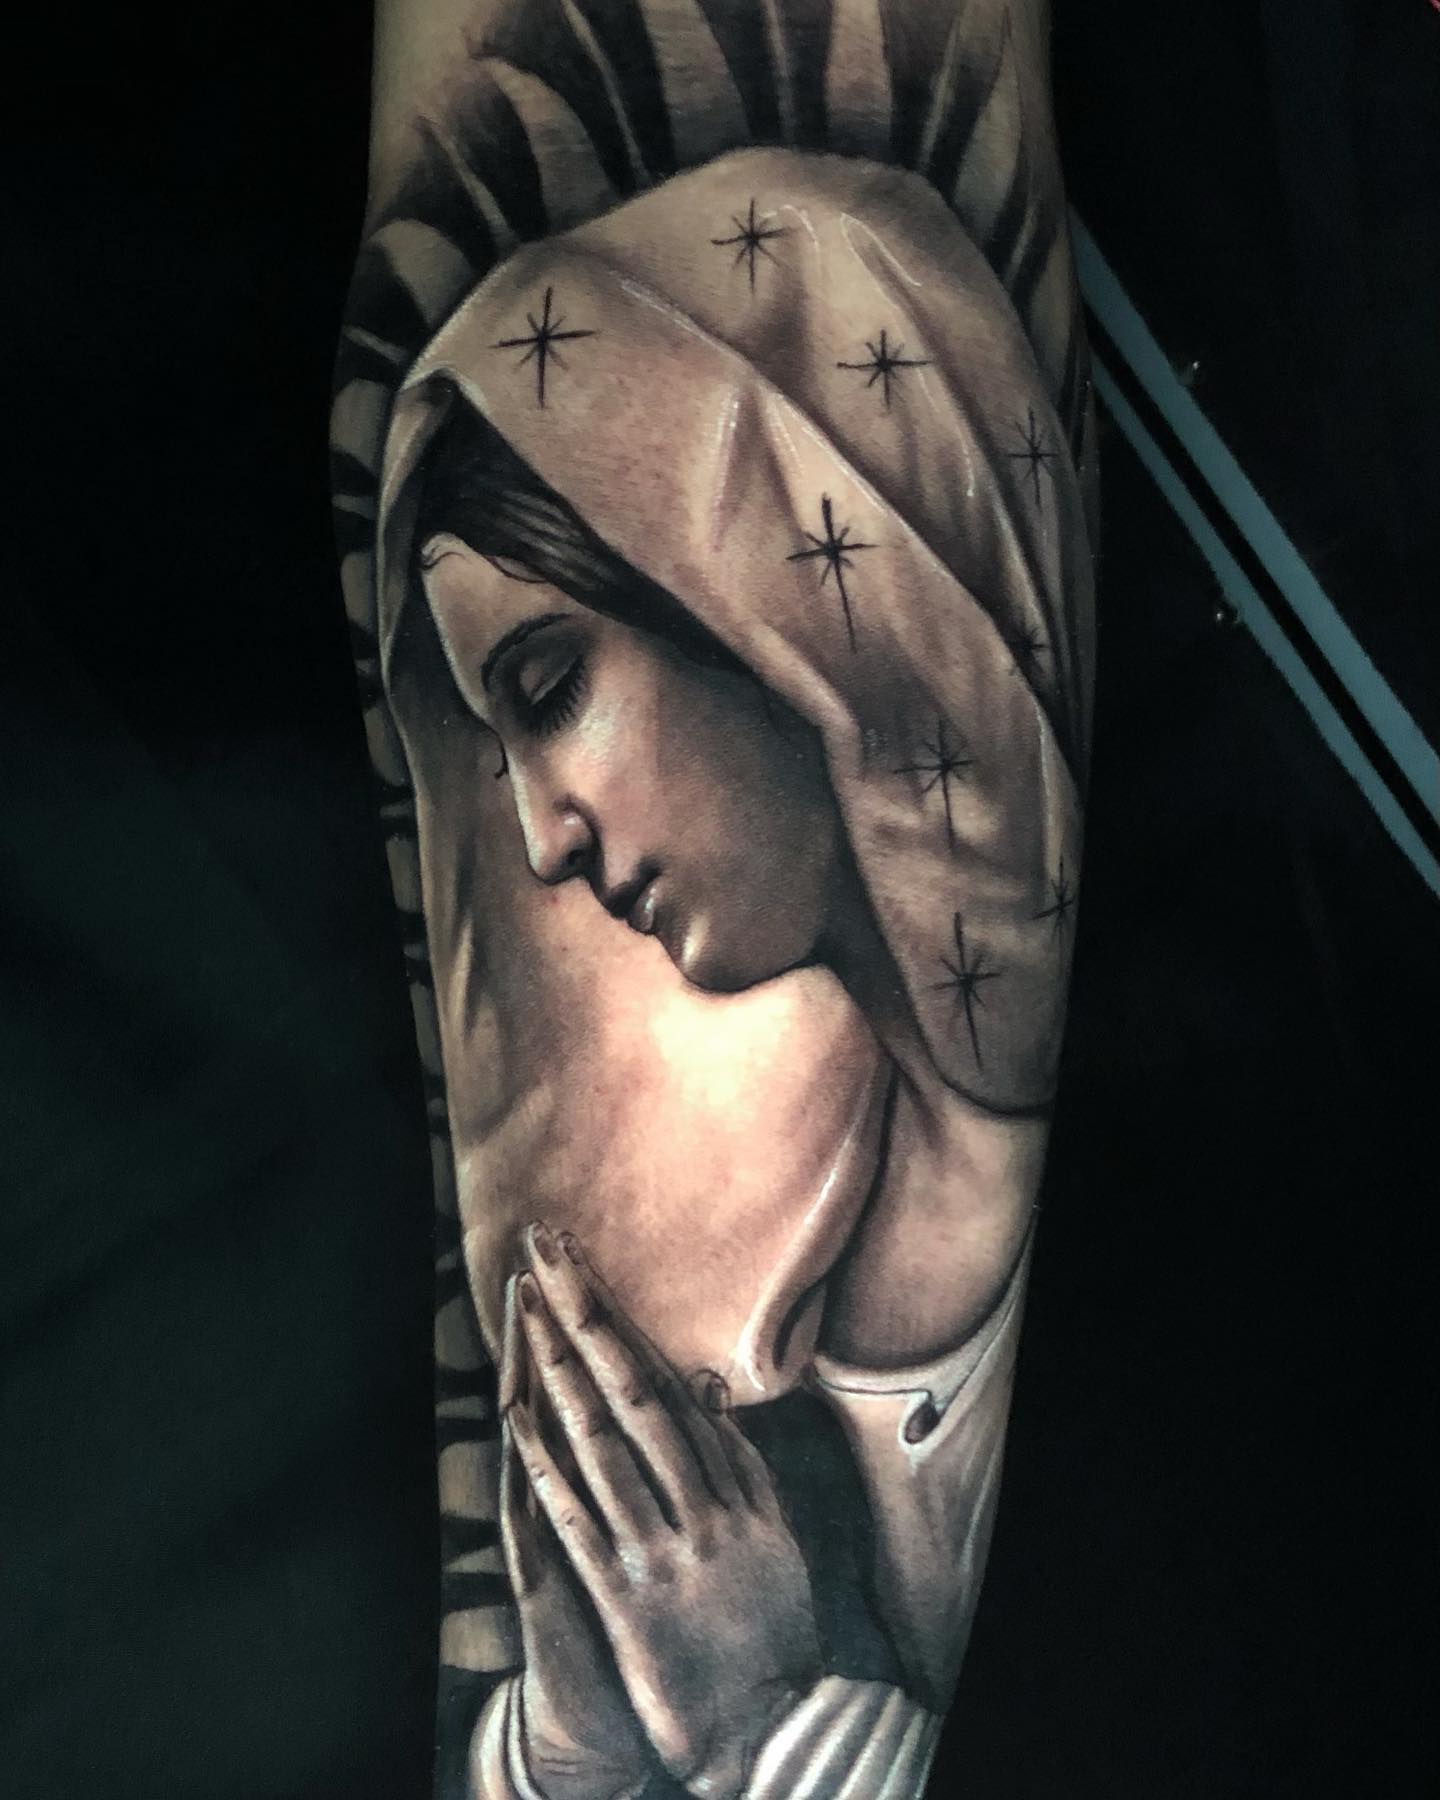 Shady tatuaje de la Virgen de Guadalupe